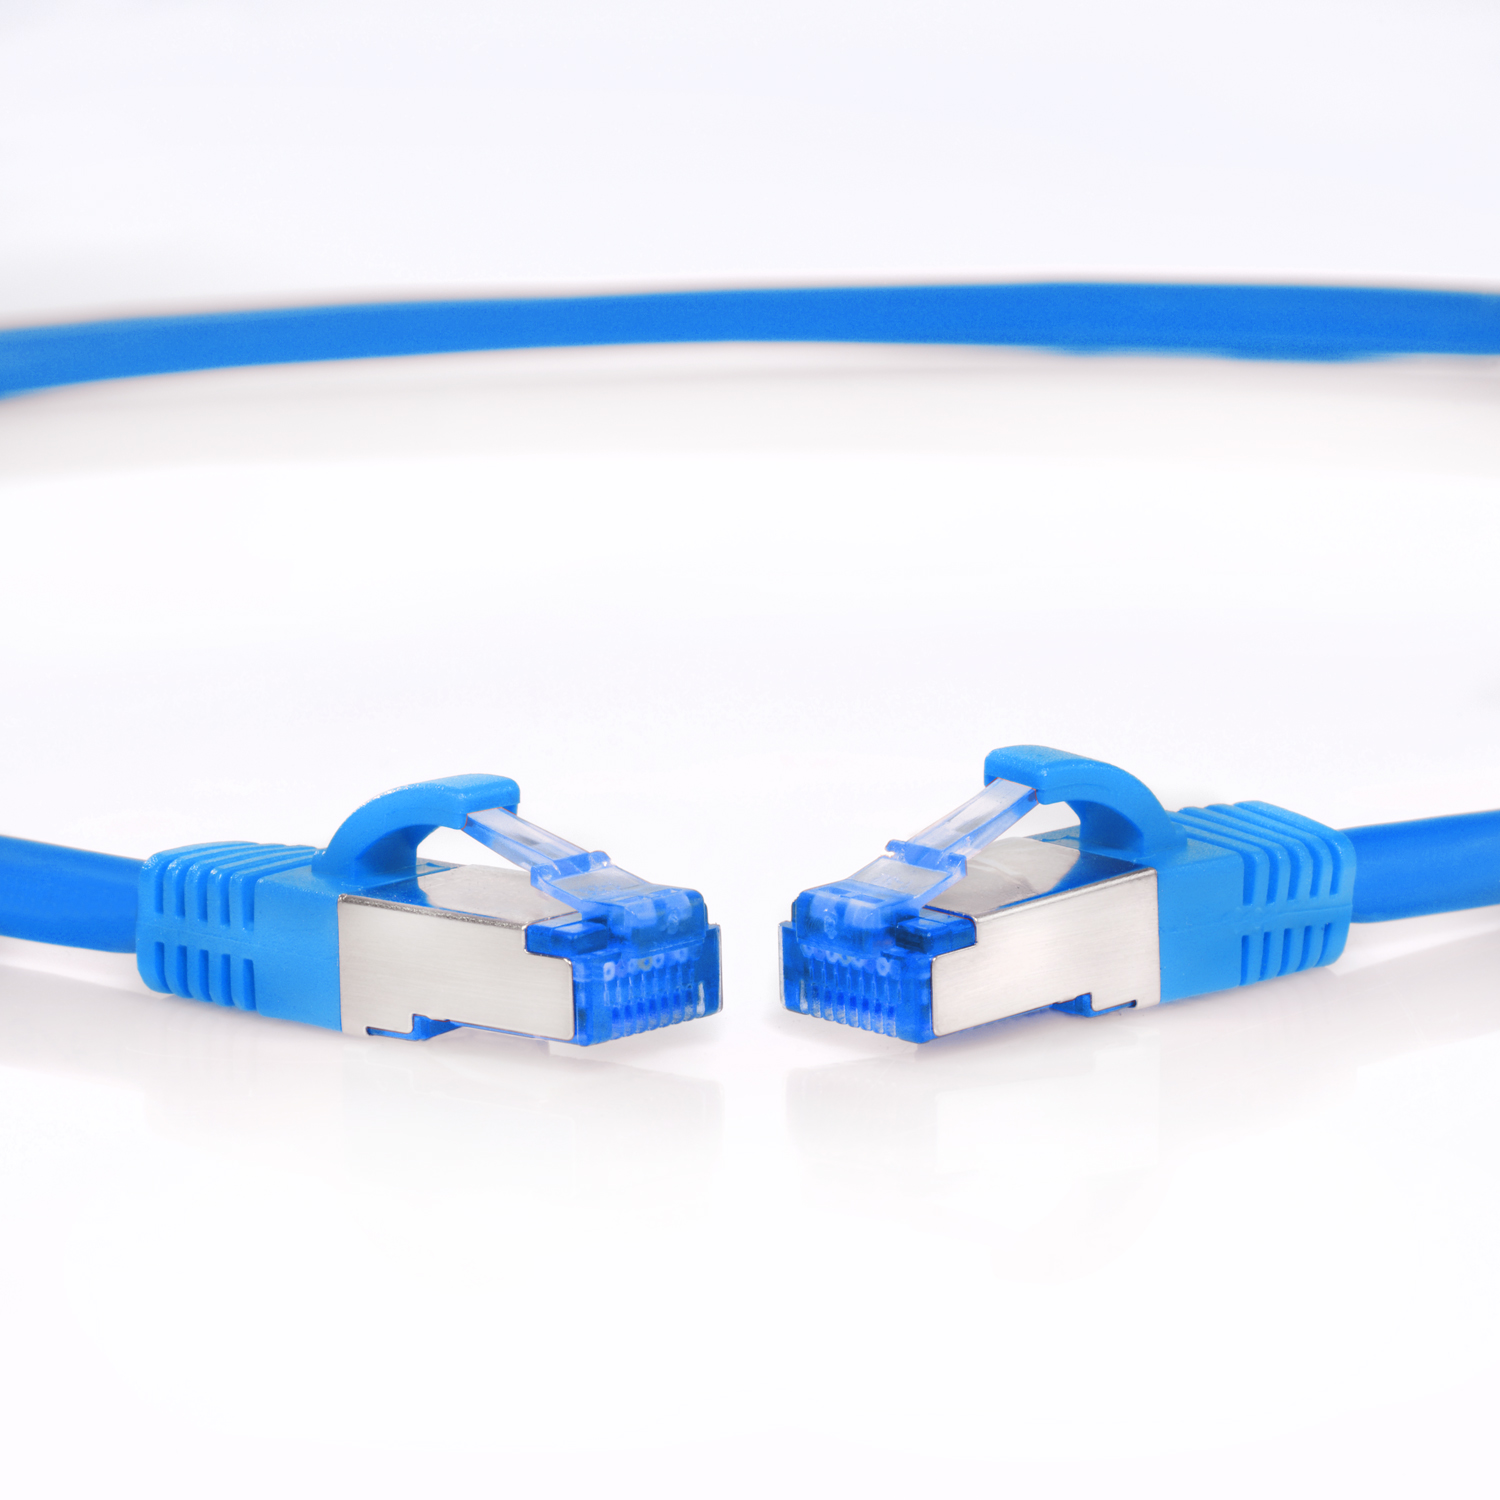 TPFNET 10m blau, m 10GBit, Netzwerkkabel / Netzwerkkabel, S/FTP 10 Patchkabel